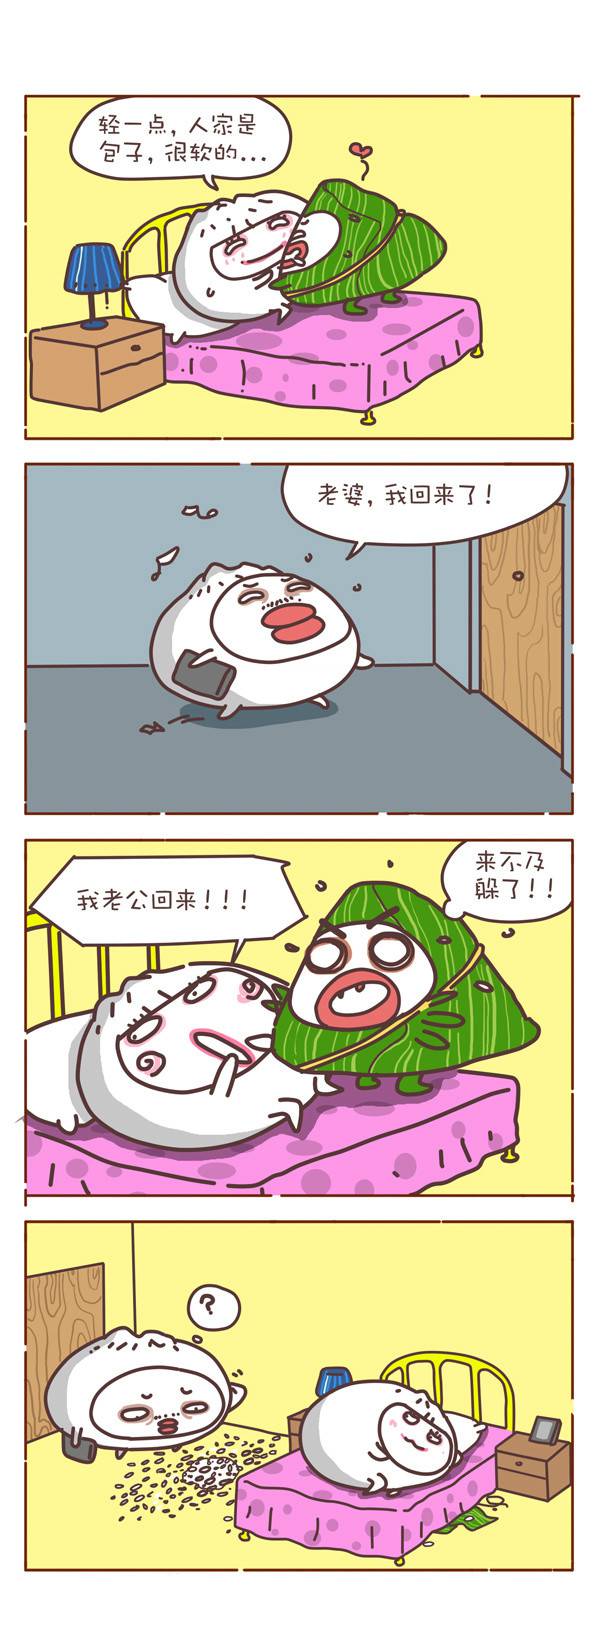 邪恶漫画爆笑囧图第004刊：迎接接吻日